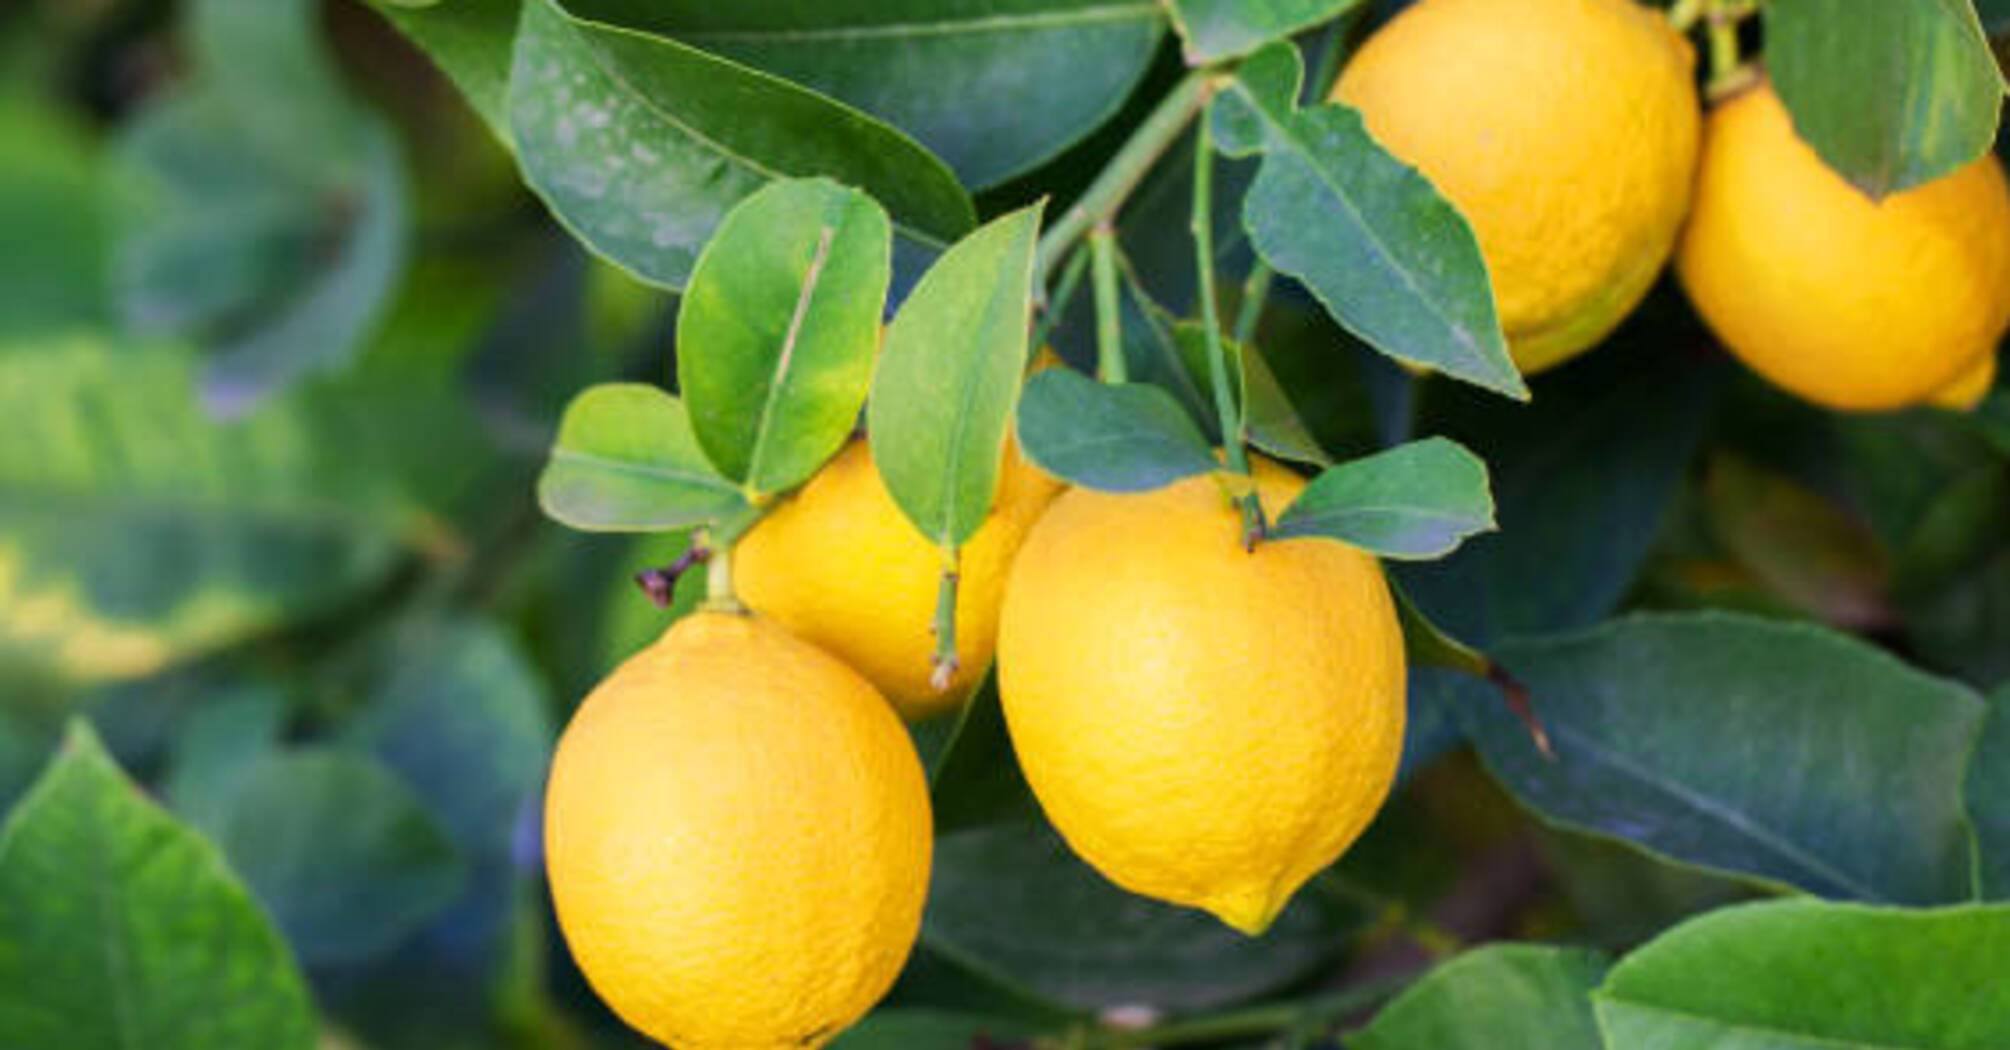 Чем лимон может помочь в быту: 3 эффективных лайфхака